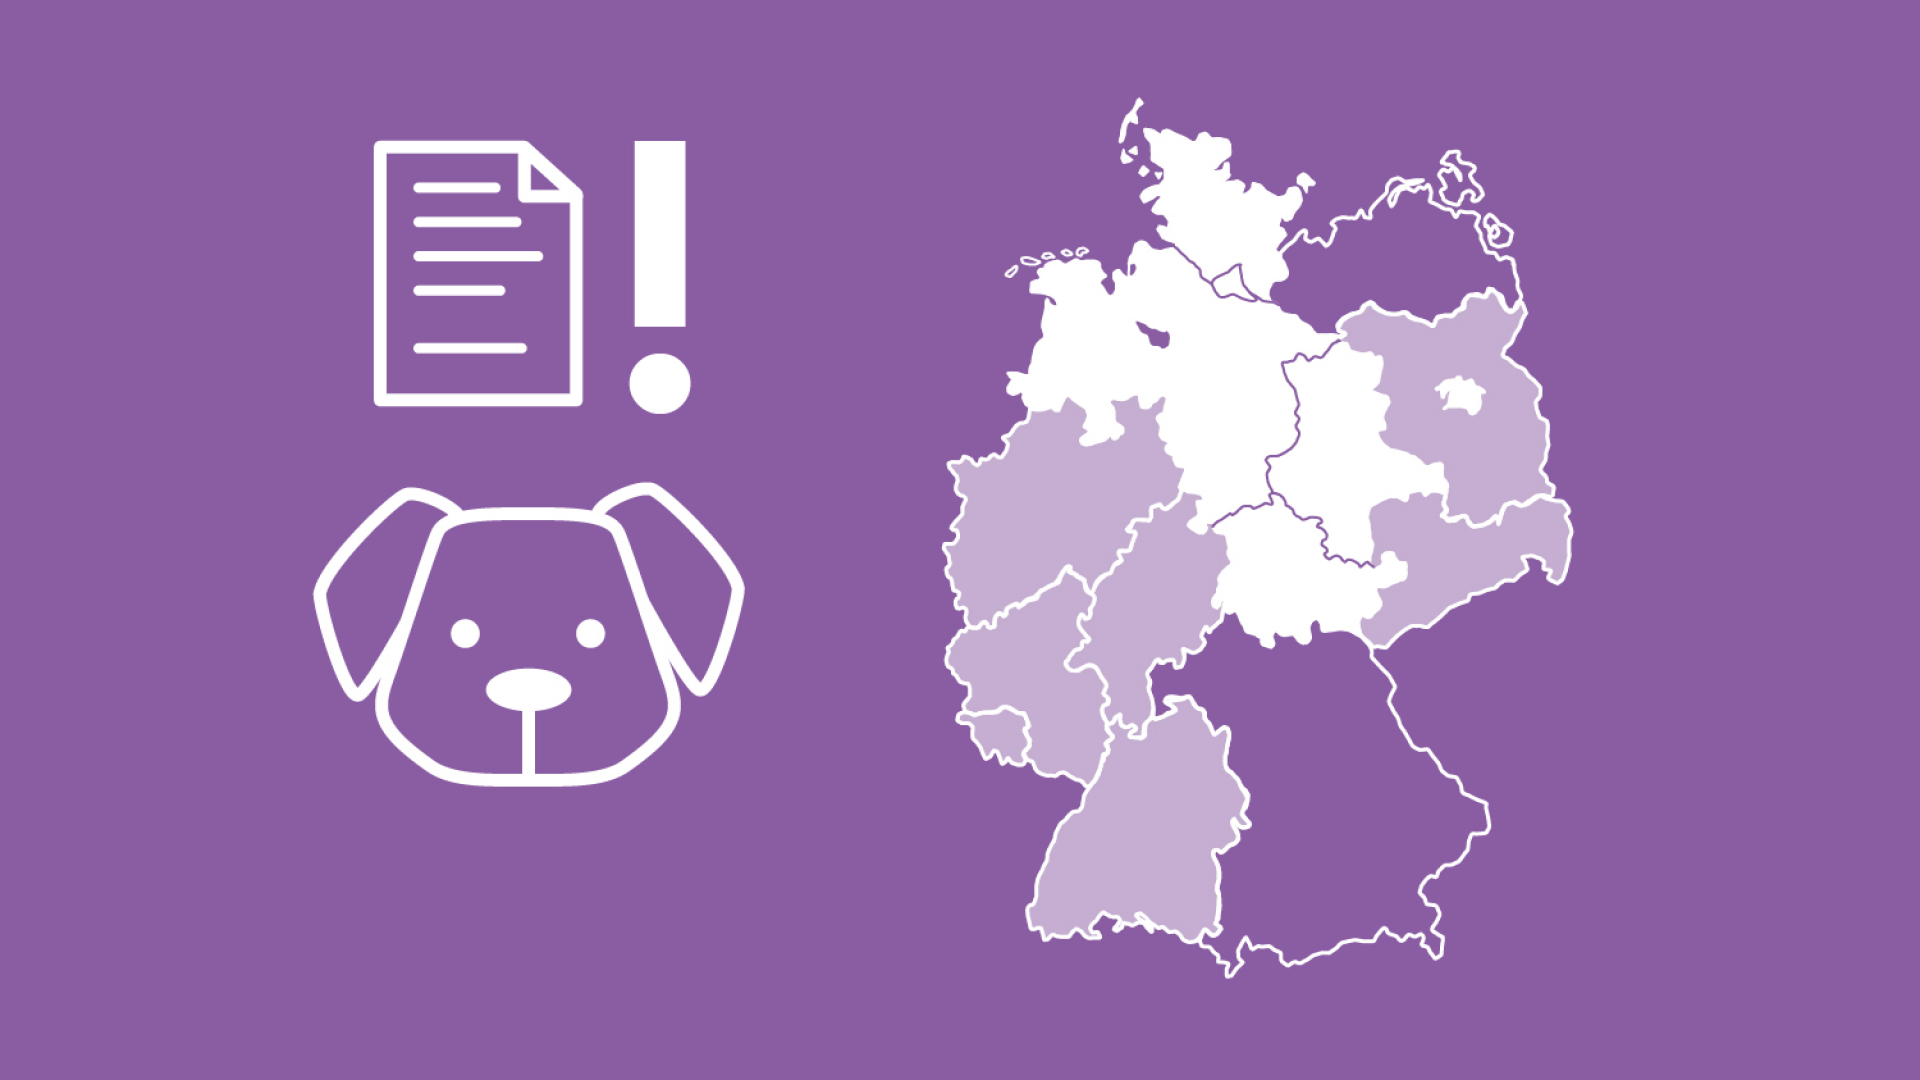 Auf der Graifk ist Deutschland mit den jeweiligen Bundesländern abgebildet. Es wird deutlich, dass die Hundeversicherung bzw. Hundehaftpflichtversicherung in bestimmten Bundesländern in Deutschland verpflichtend ist.